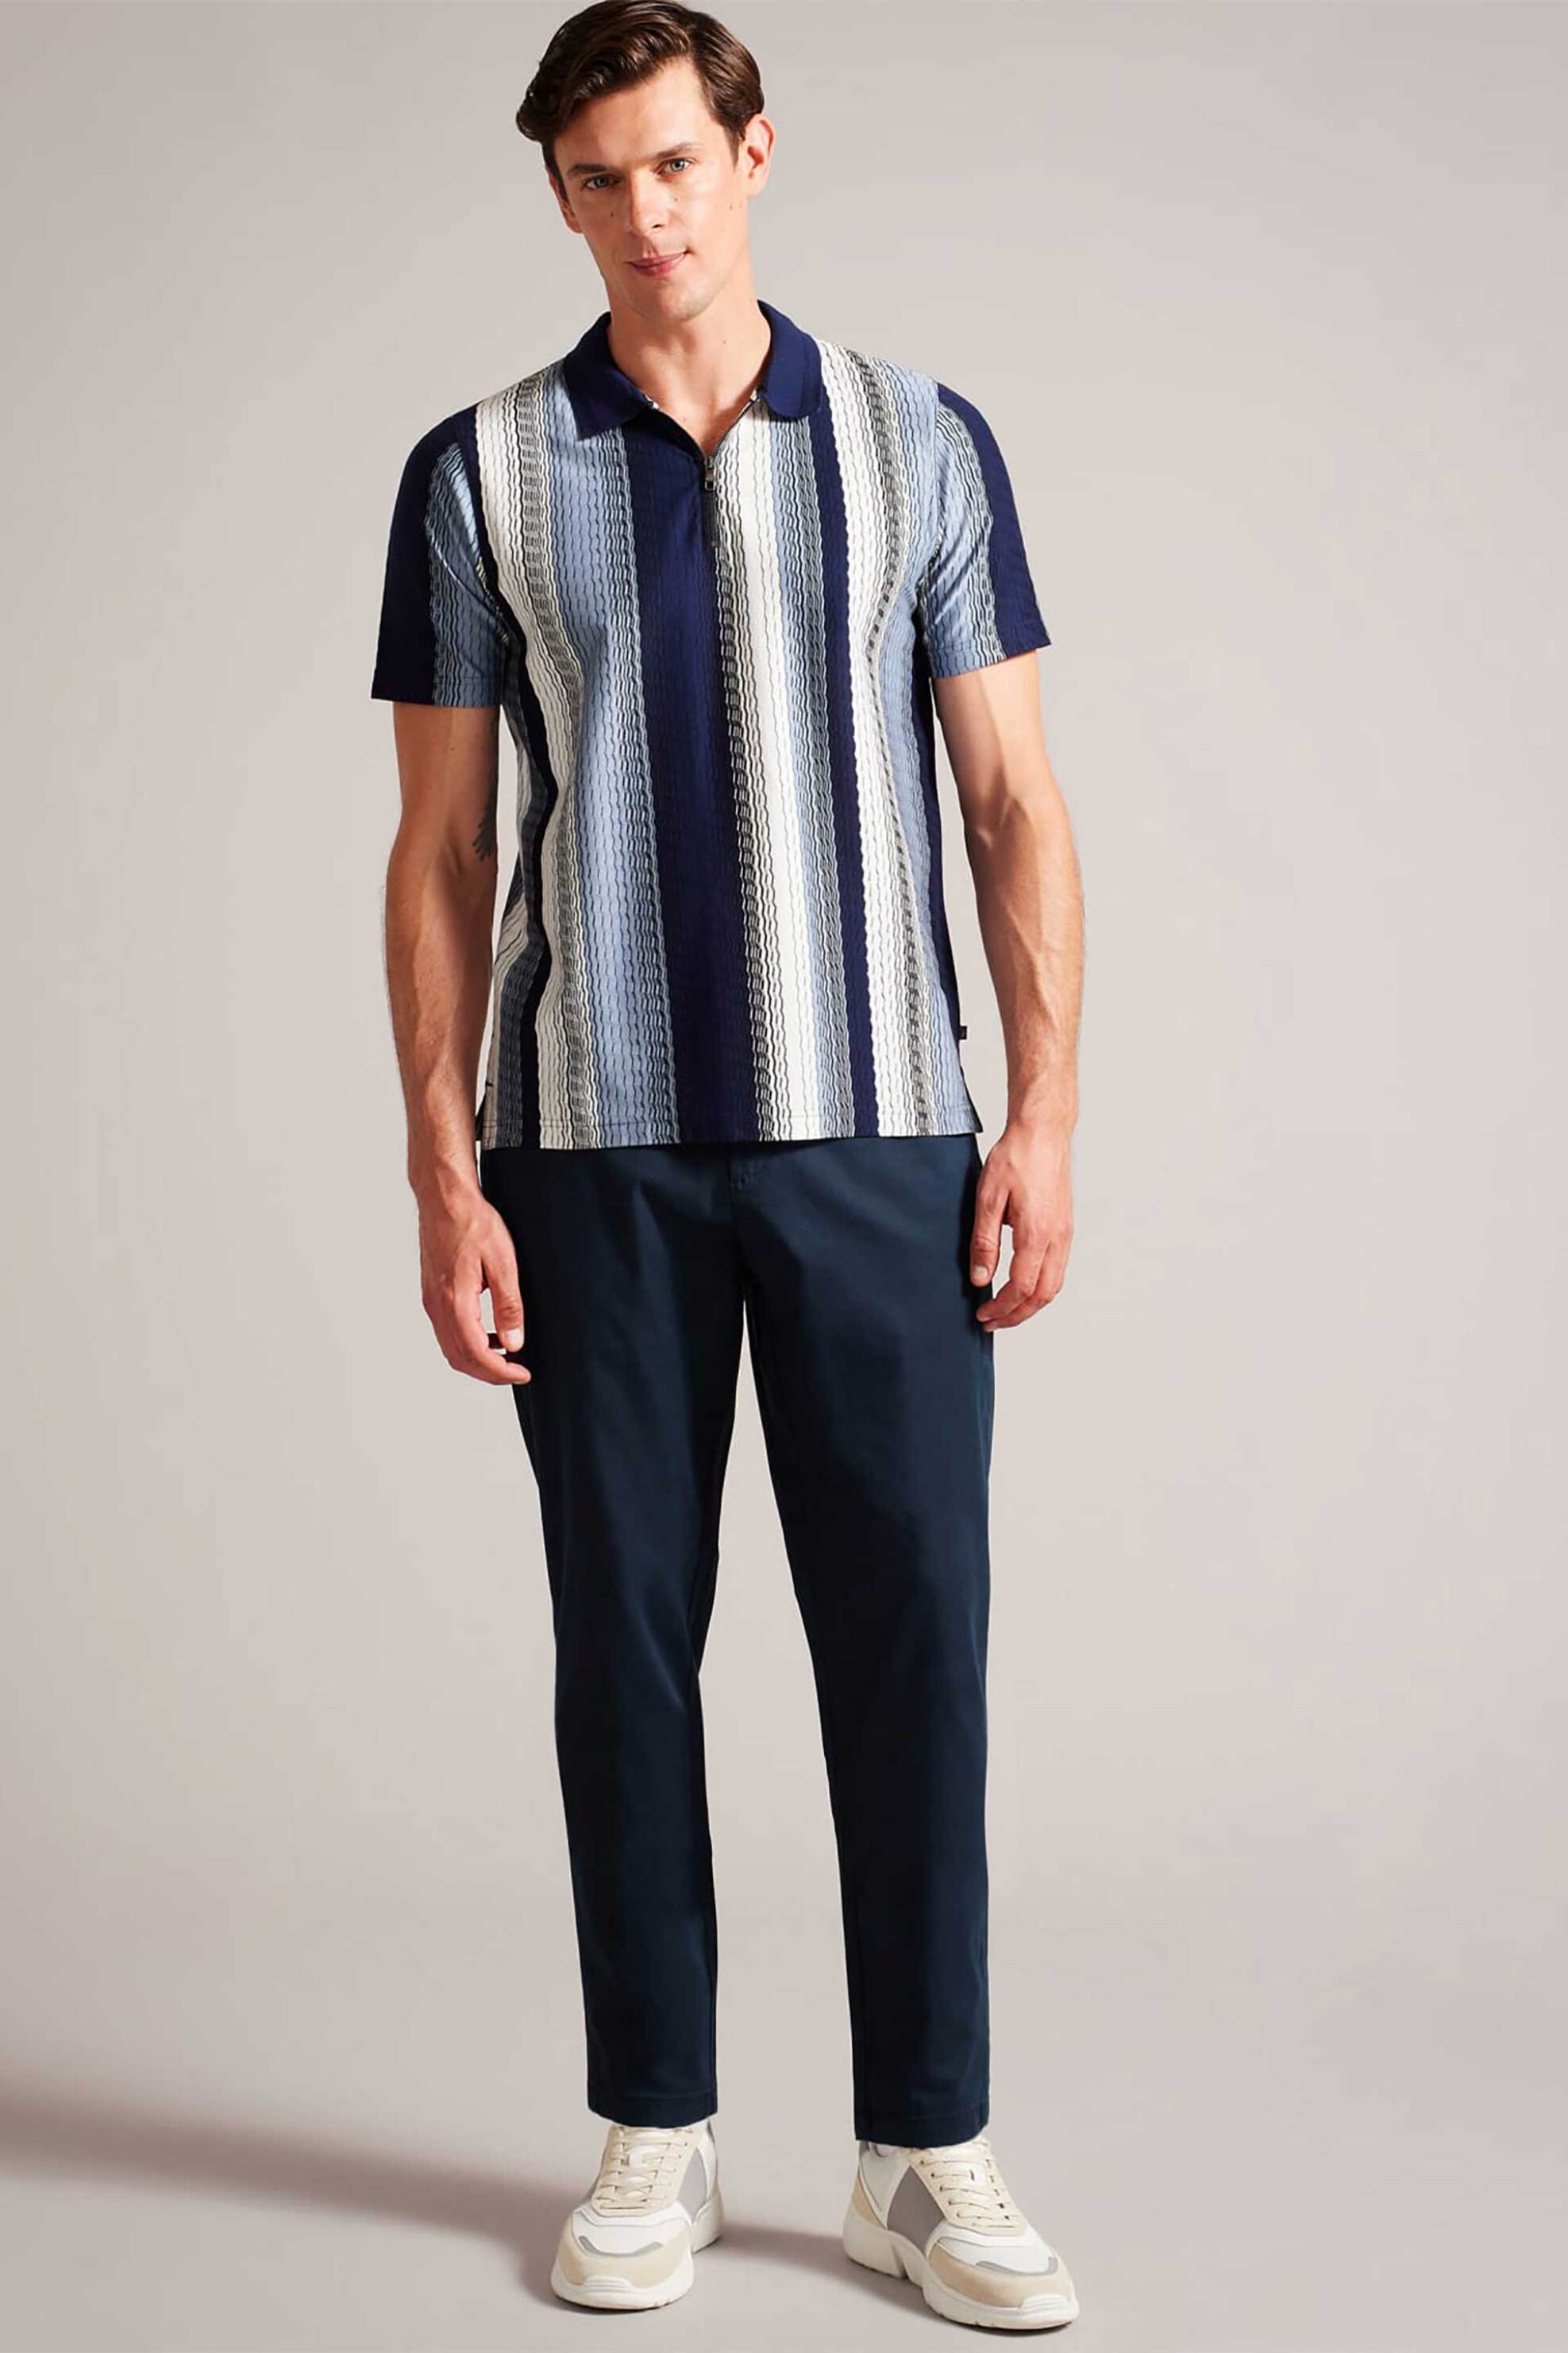 Ανδρική Μόδα > Ανδρικά Ρούχα > Ανδρικά Παντελόνια > Ανδρικά Παντελόνια Chinos Ted Baker ανδρικό παντελόνι chinos μονόχρωμο Regular Fit "Haybrn" - 272429 Μπλε Σκούρο